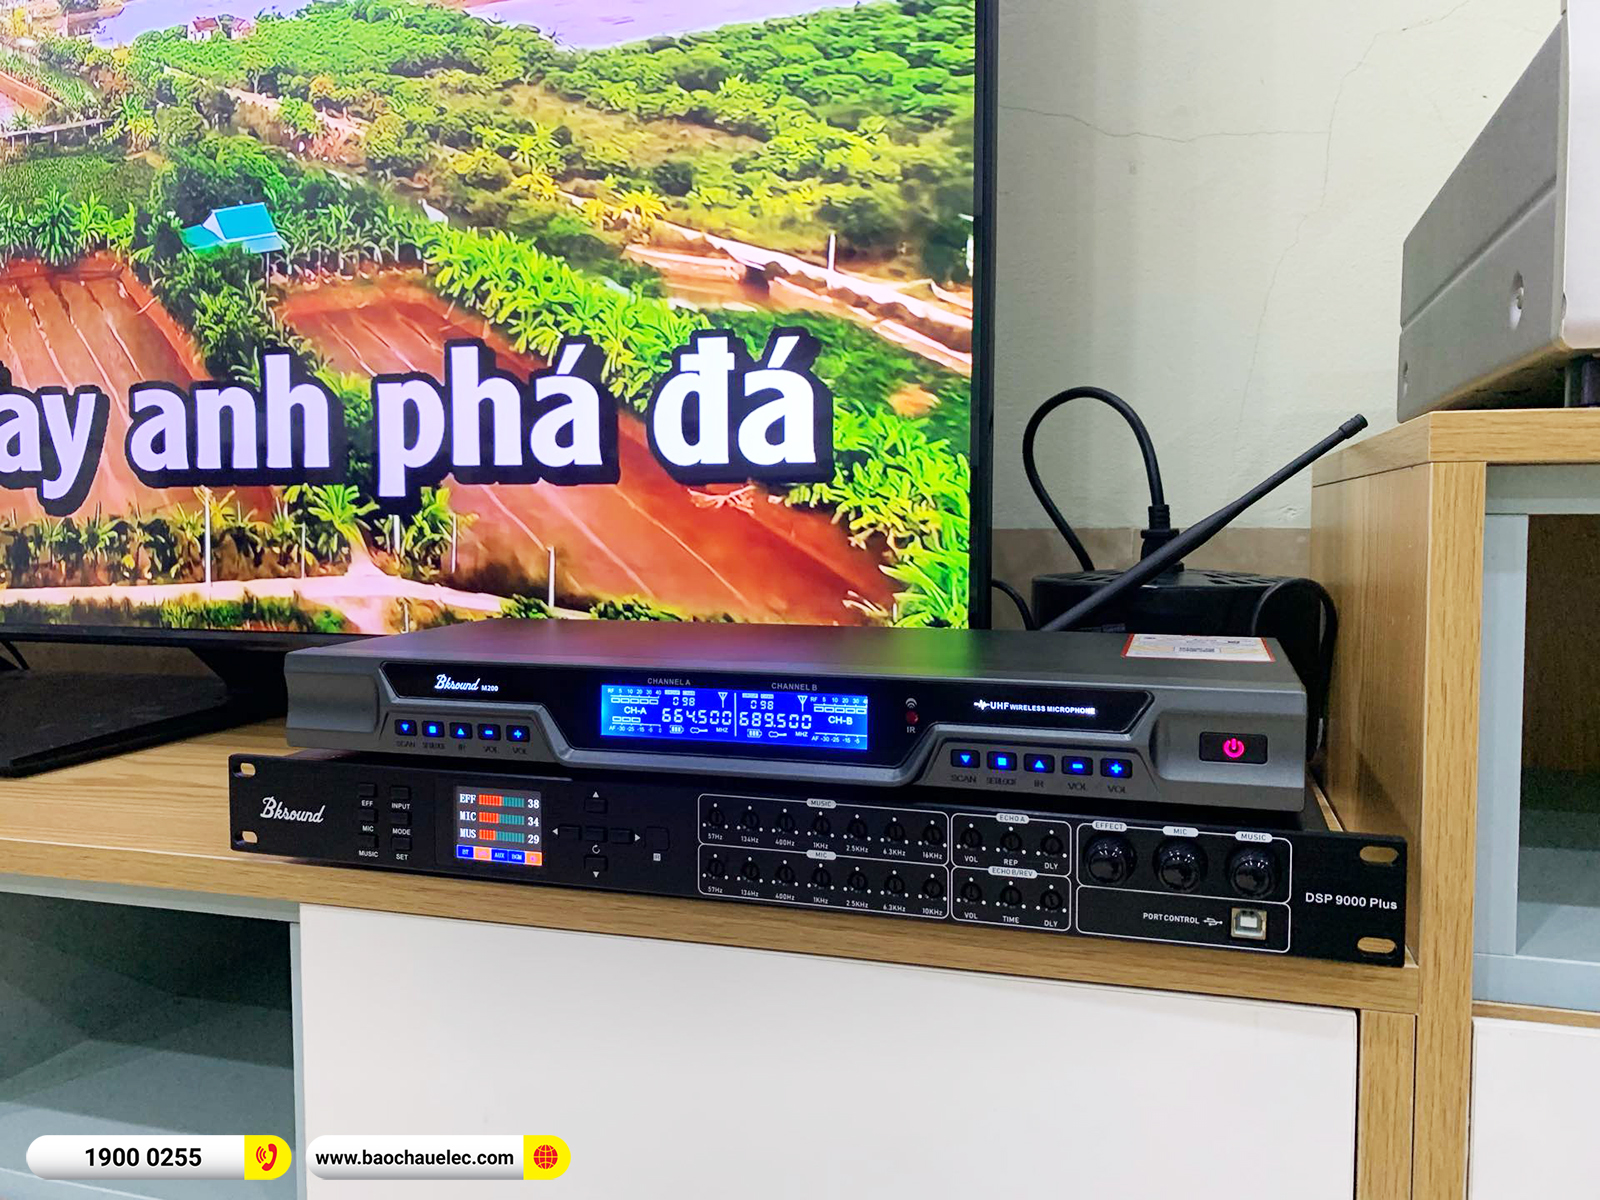 Lắp đặt dàn nghe nhạc, karaoke JBL hơn 20tr cho chú Đoàn ở Hà Nội 